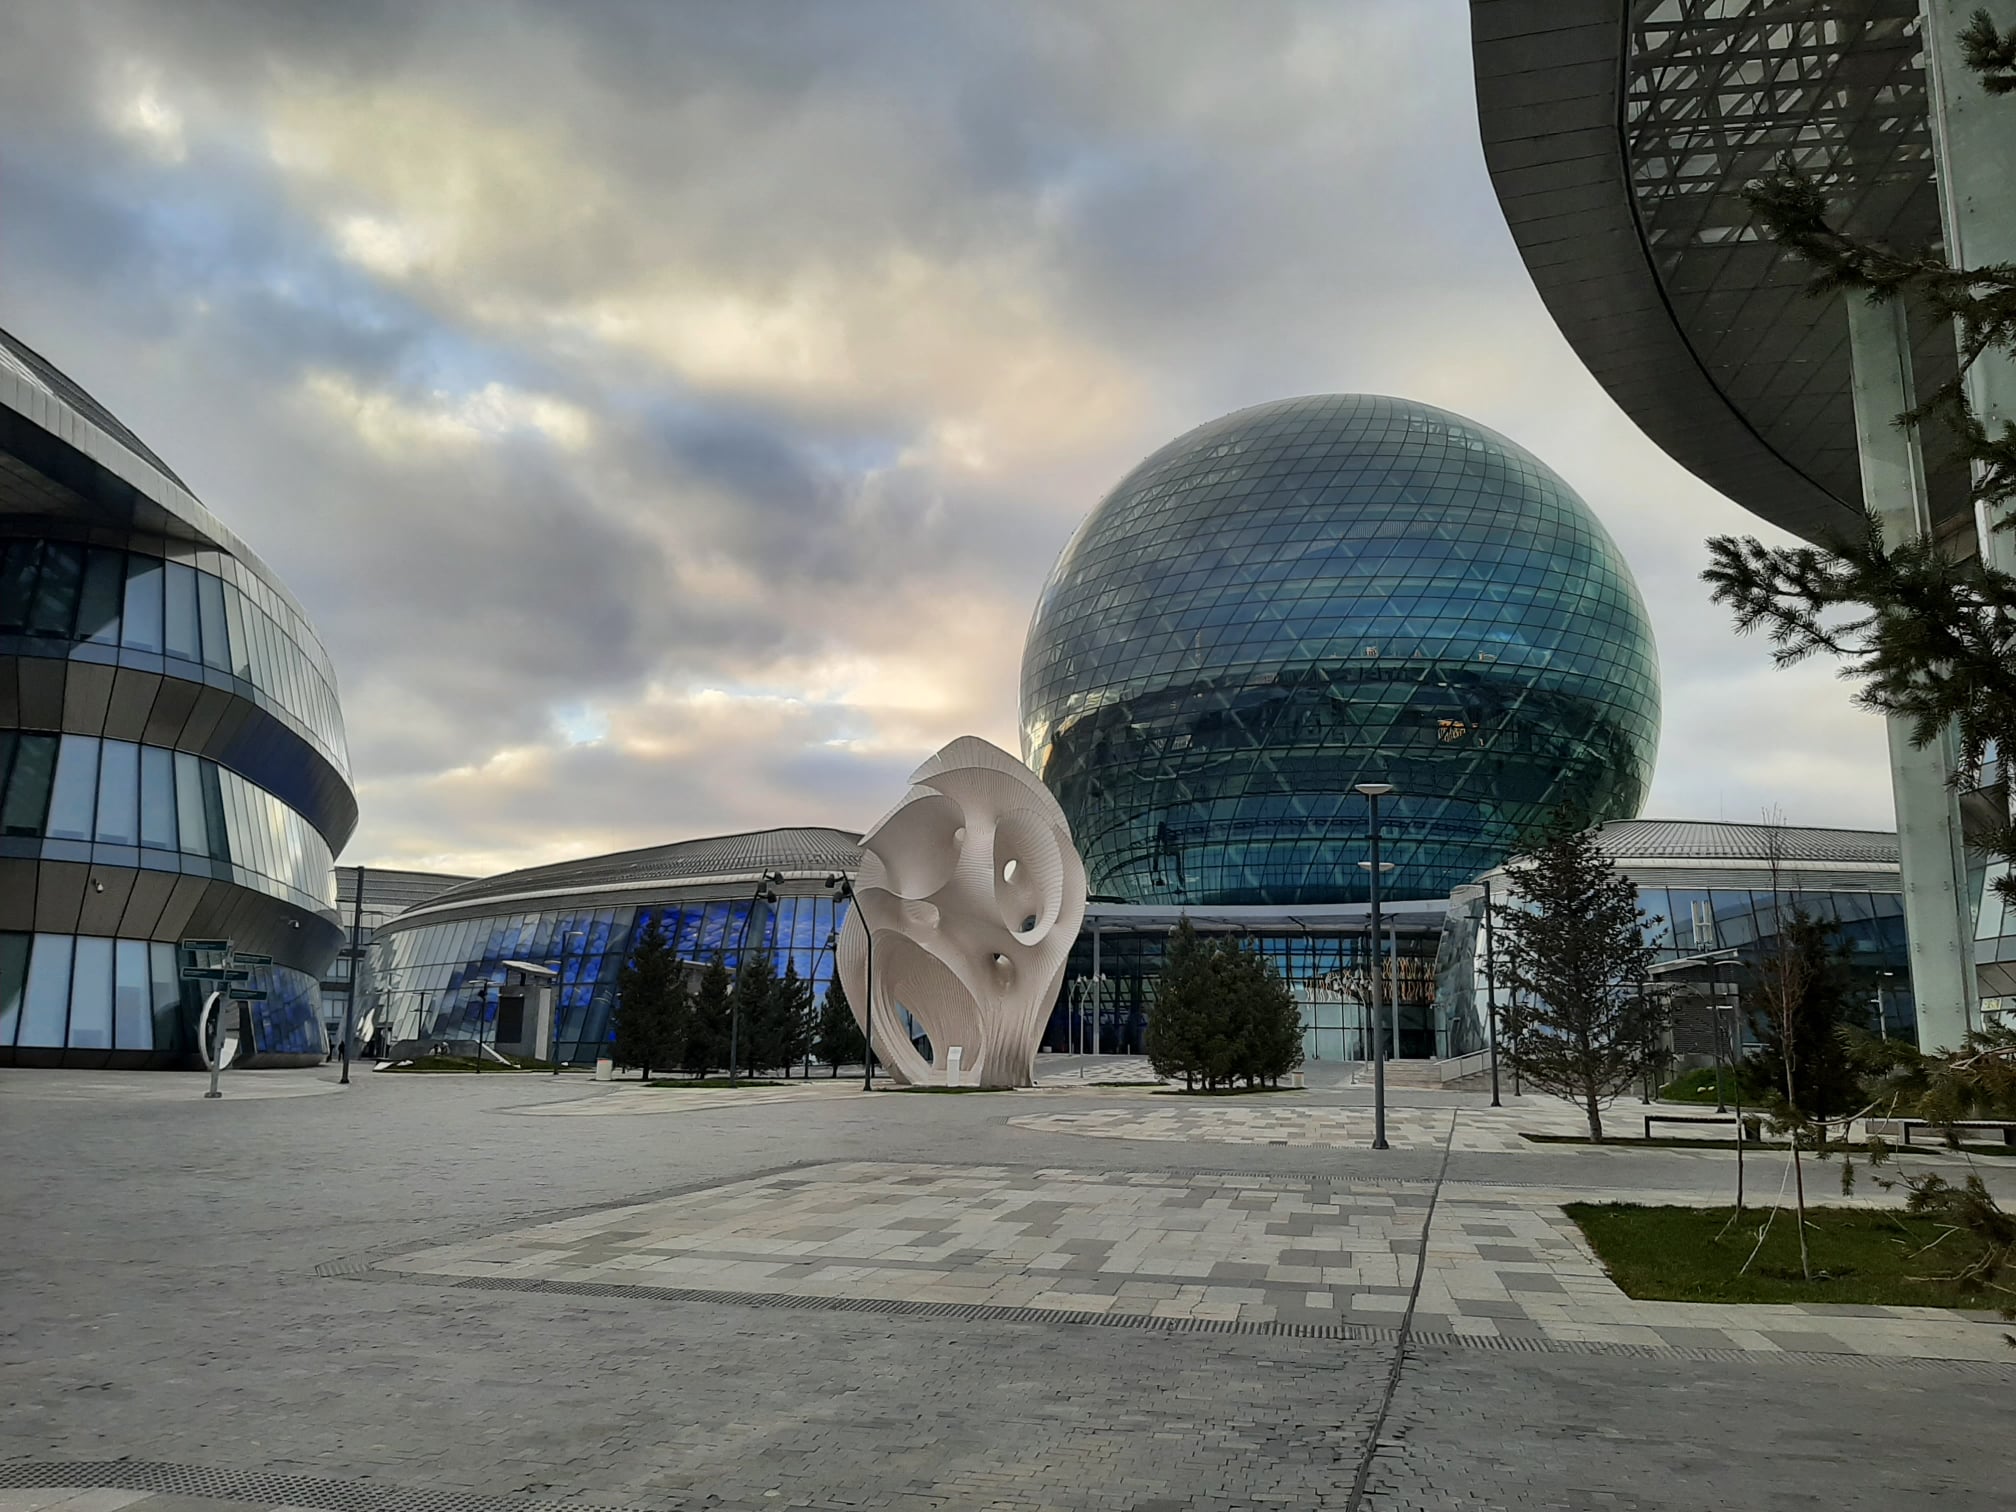 Tereny EXPO 2017 Astana